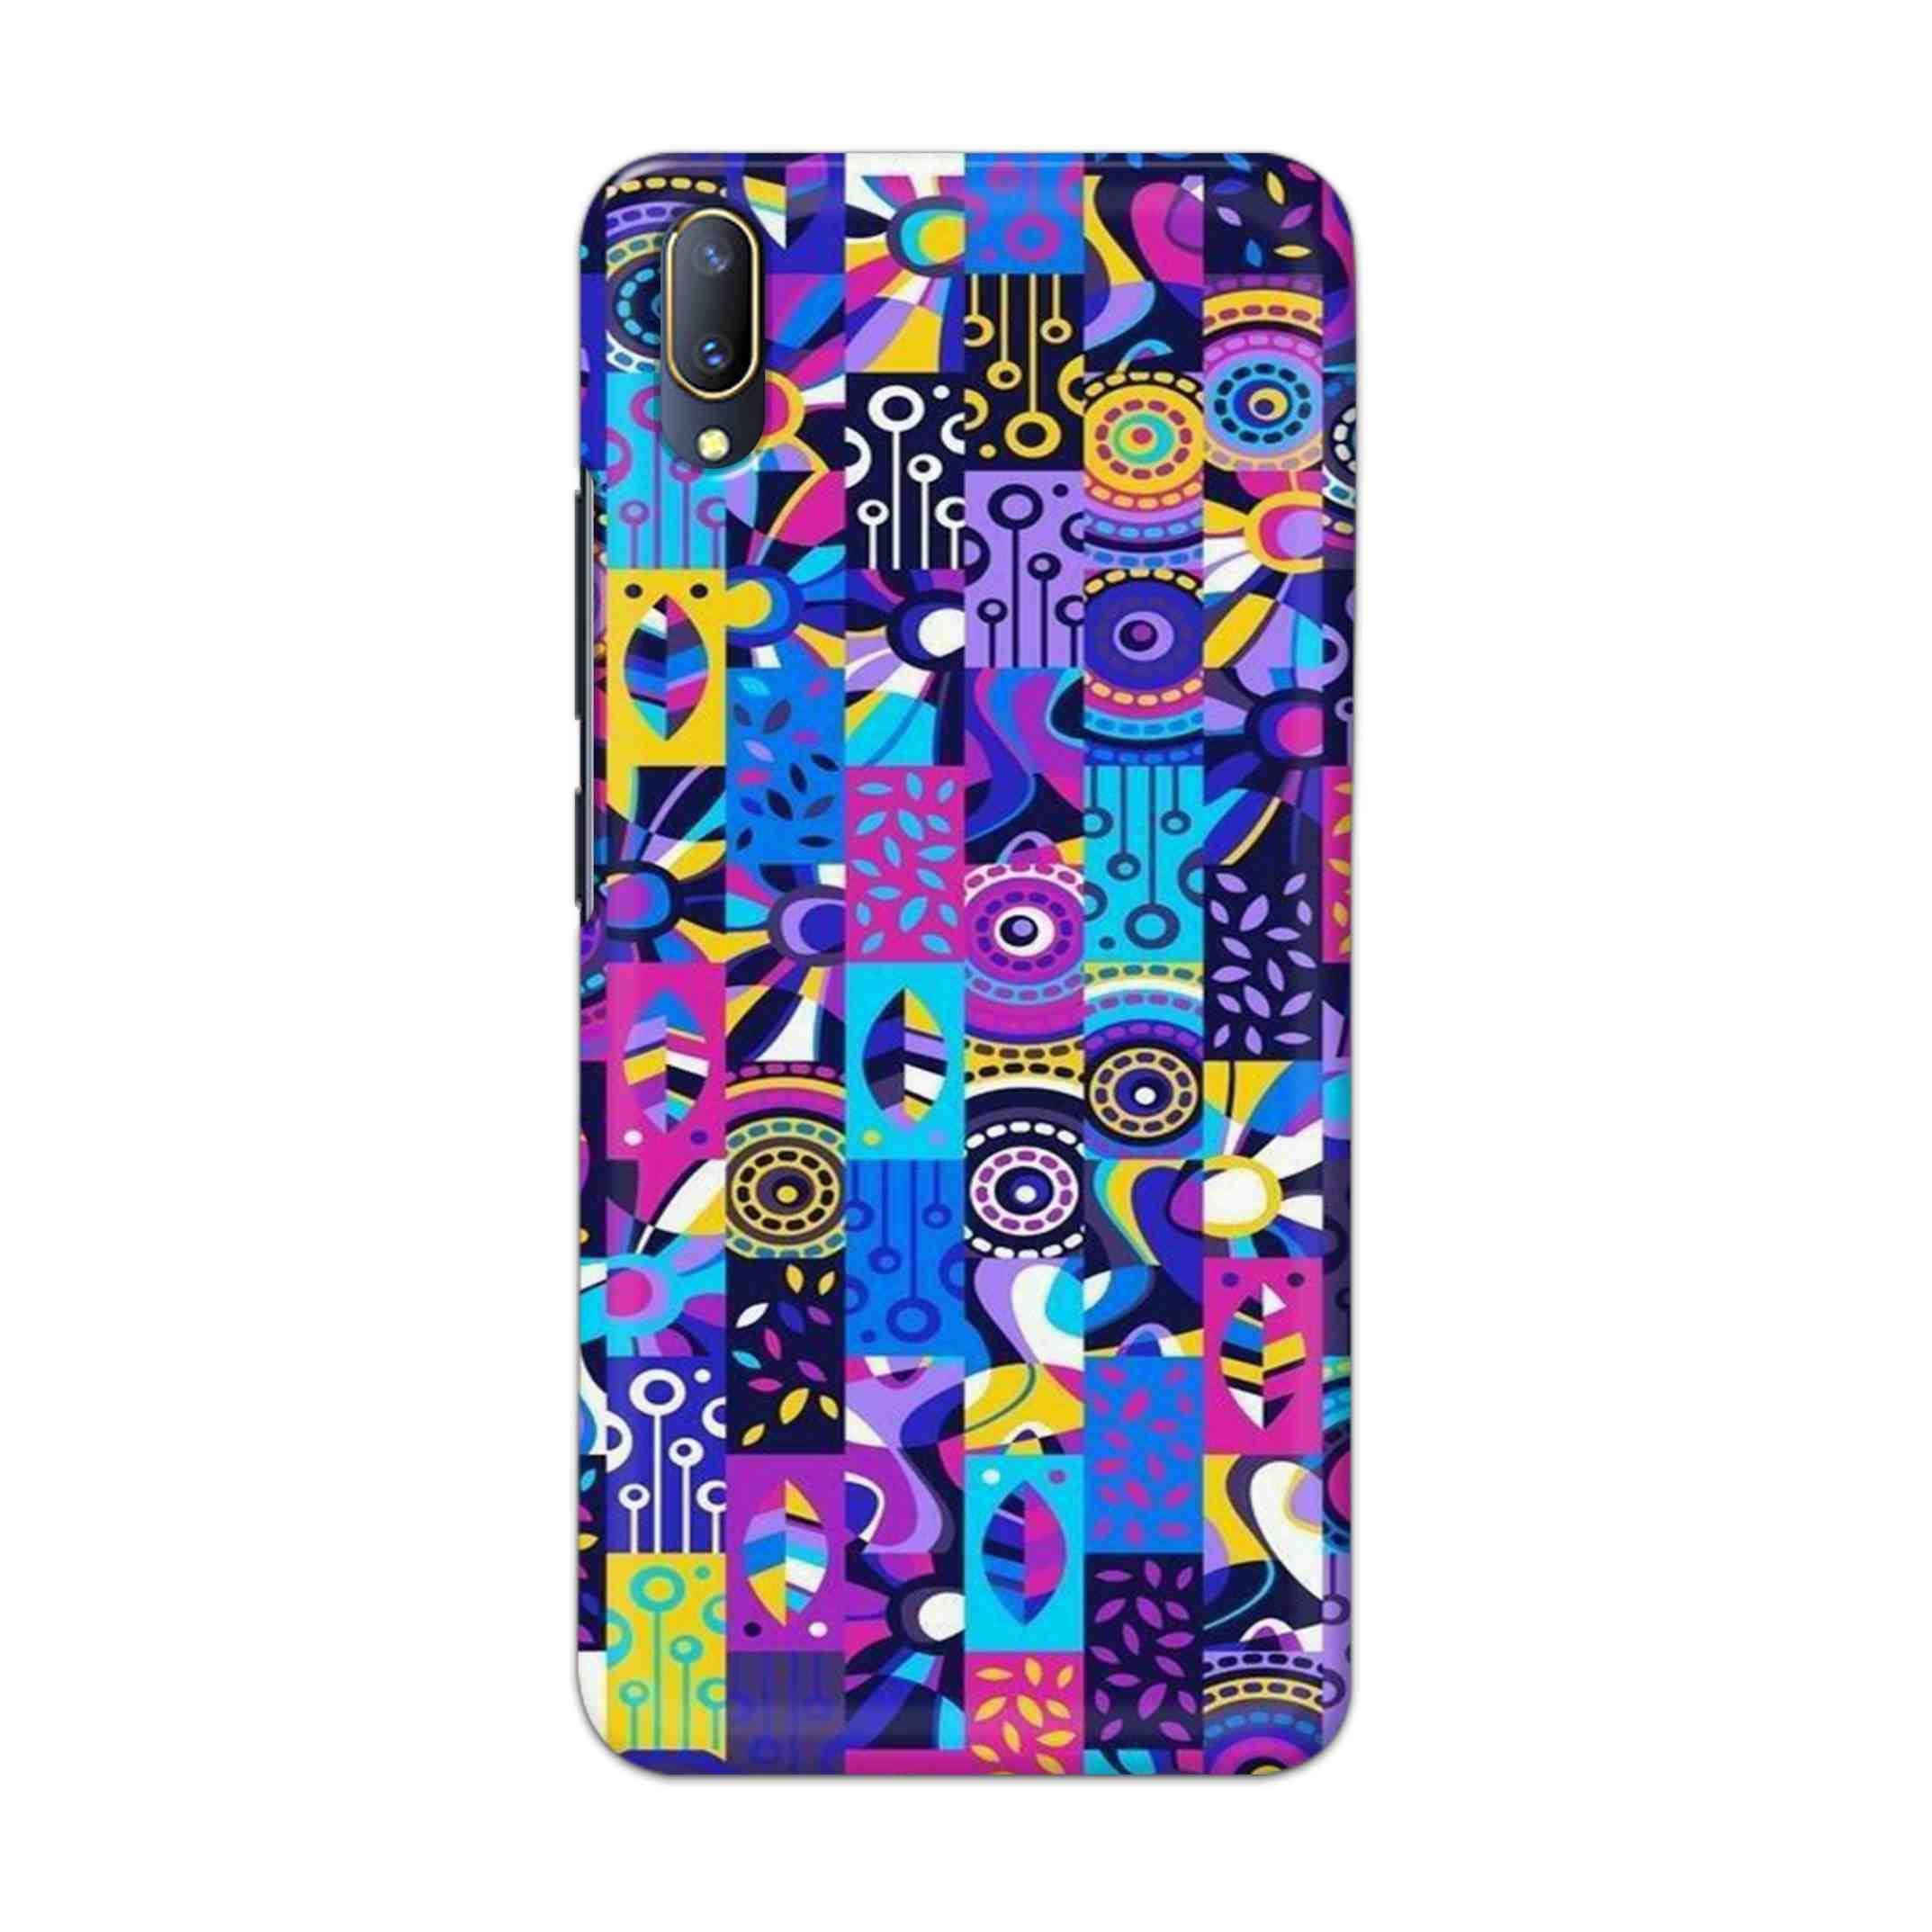 Buy Rainbow Art Hard Back Mobile Phone Case Cover For V11 PRO Online